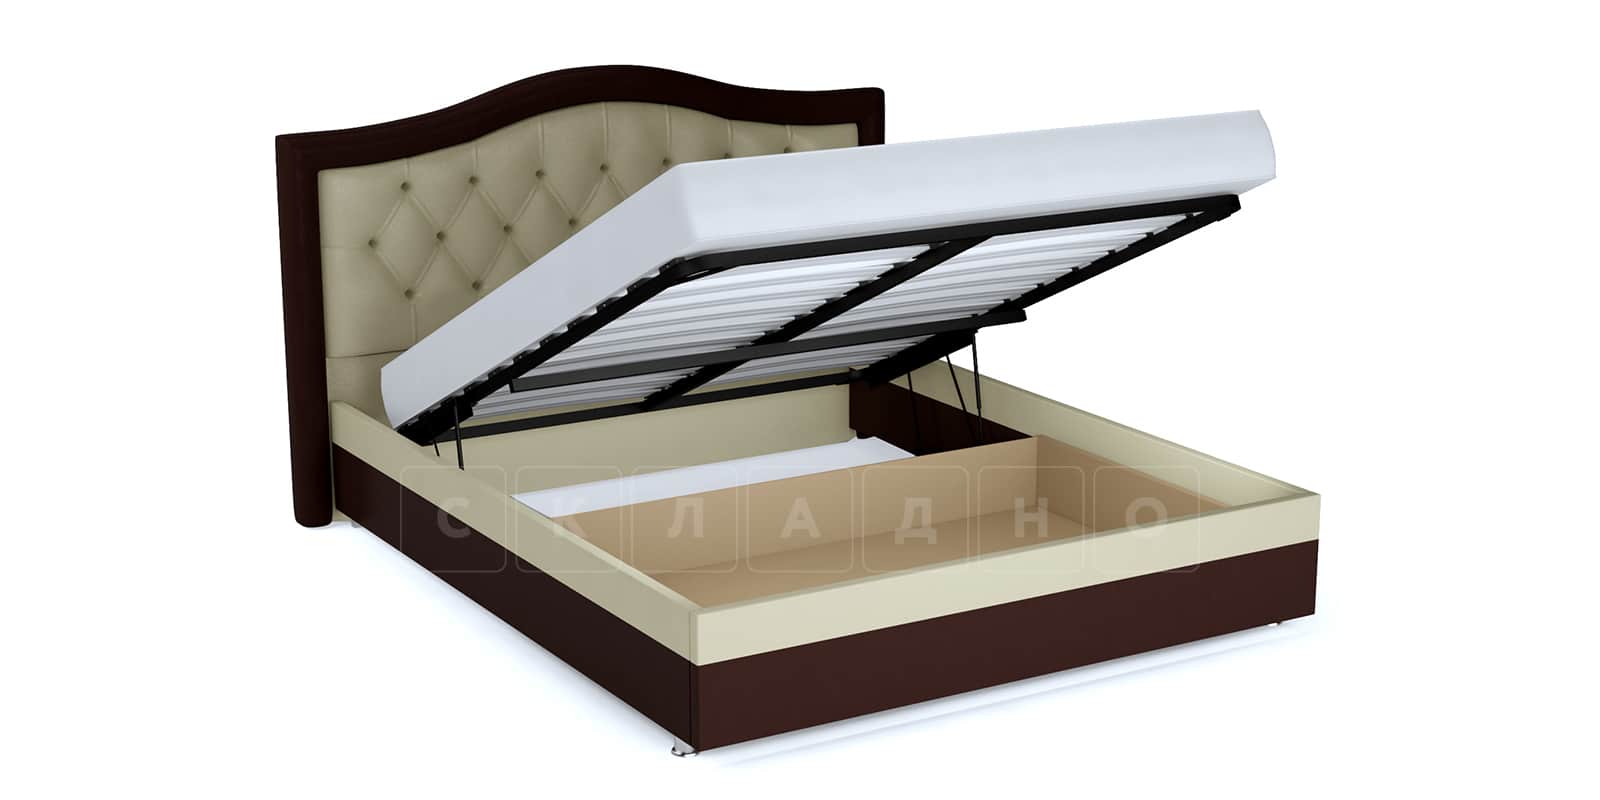 Мягкая кровать Малибу 160 см экокожа бежевый-шоколад вариант 9 фото 2 | интернет-магазин Складно